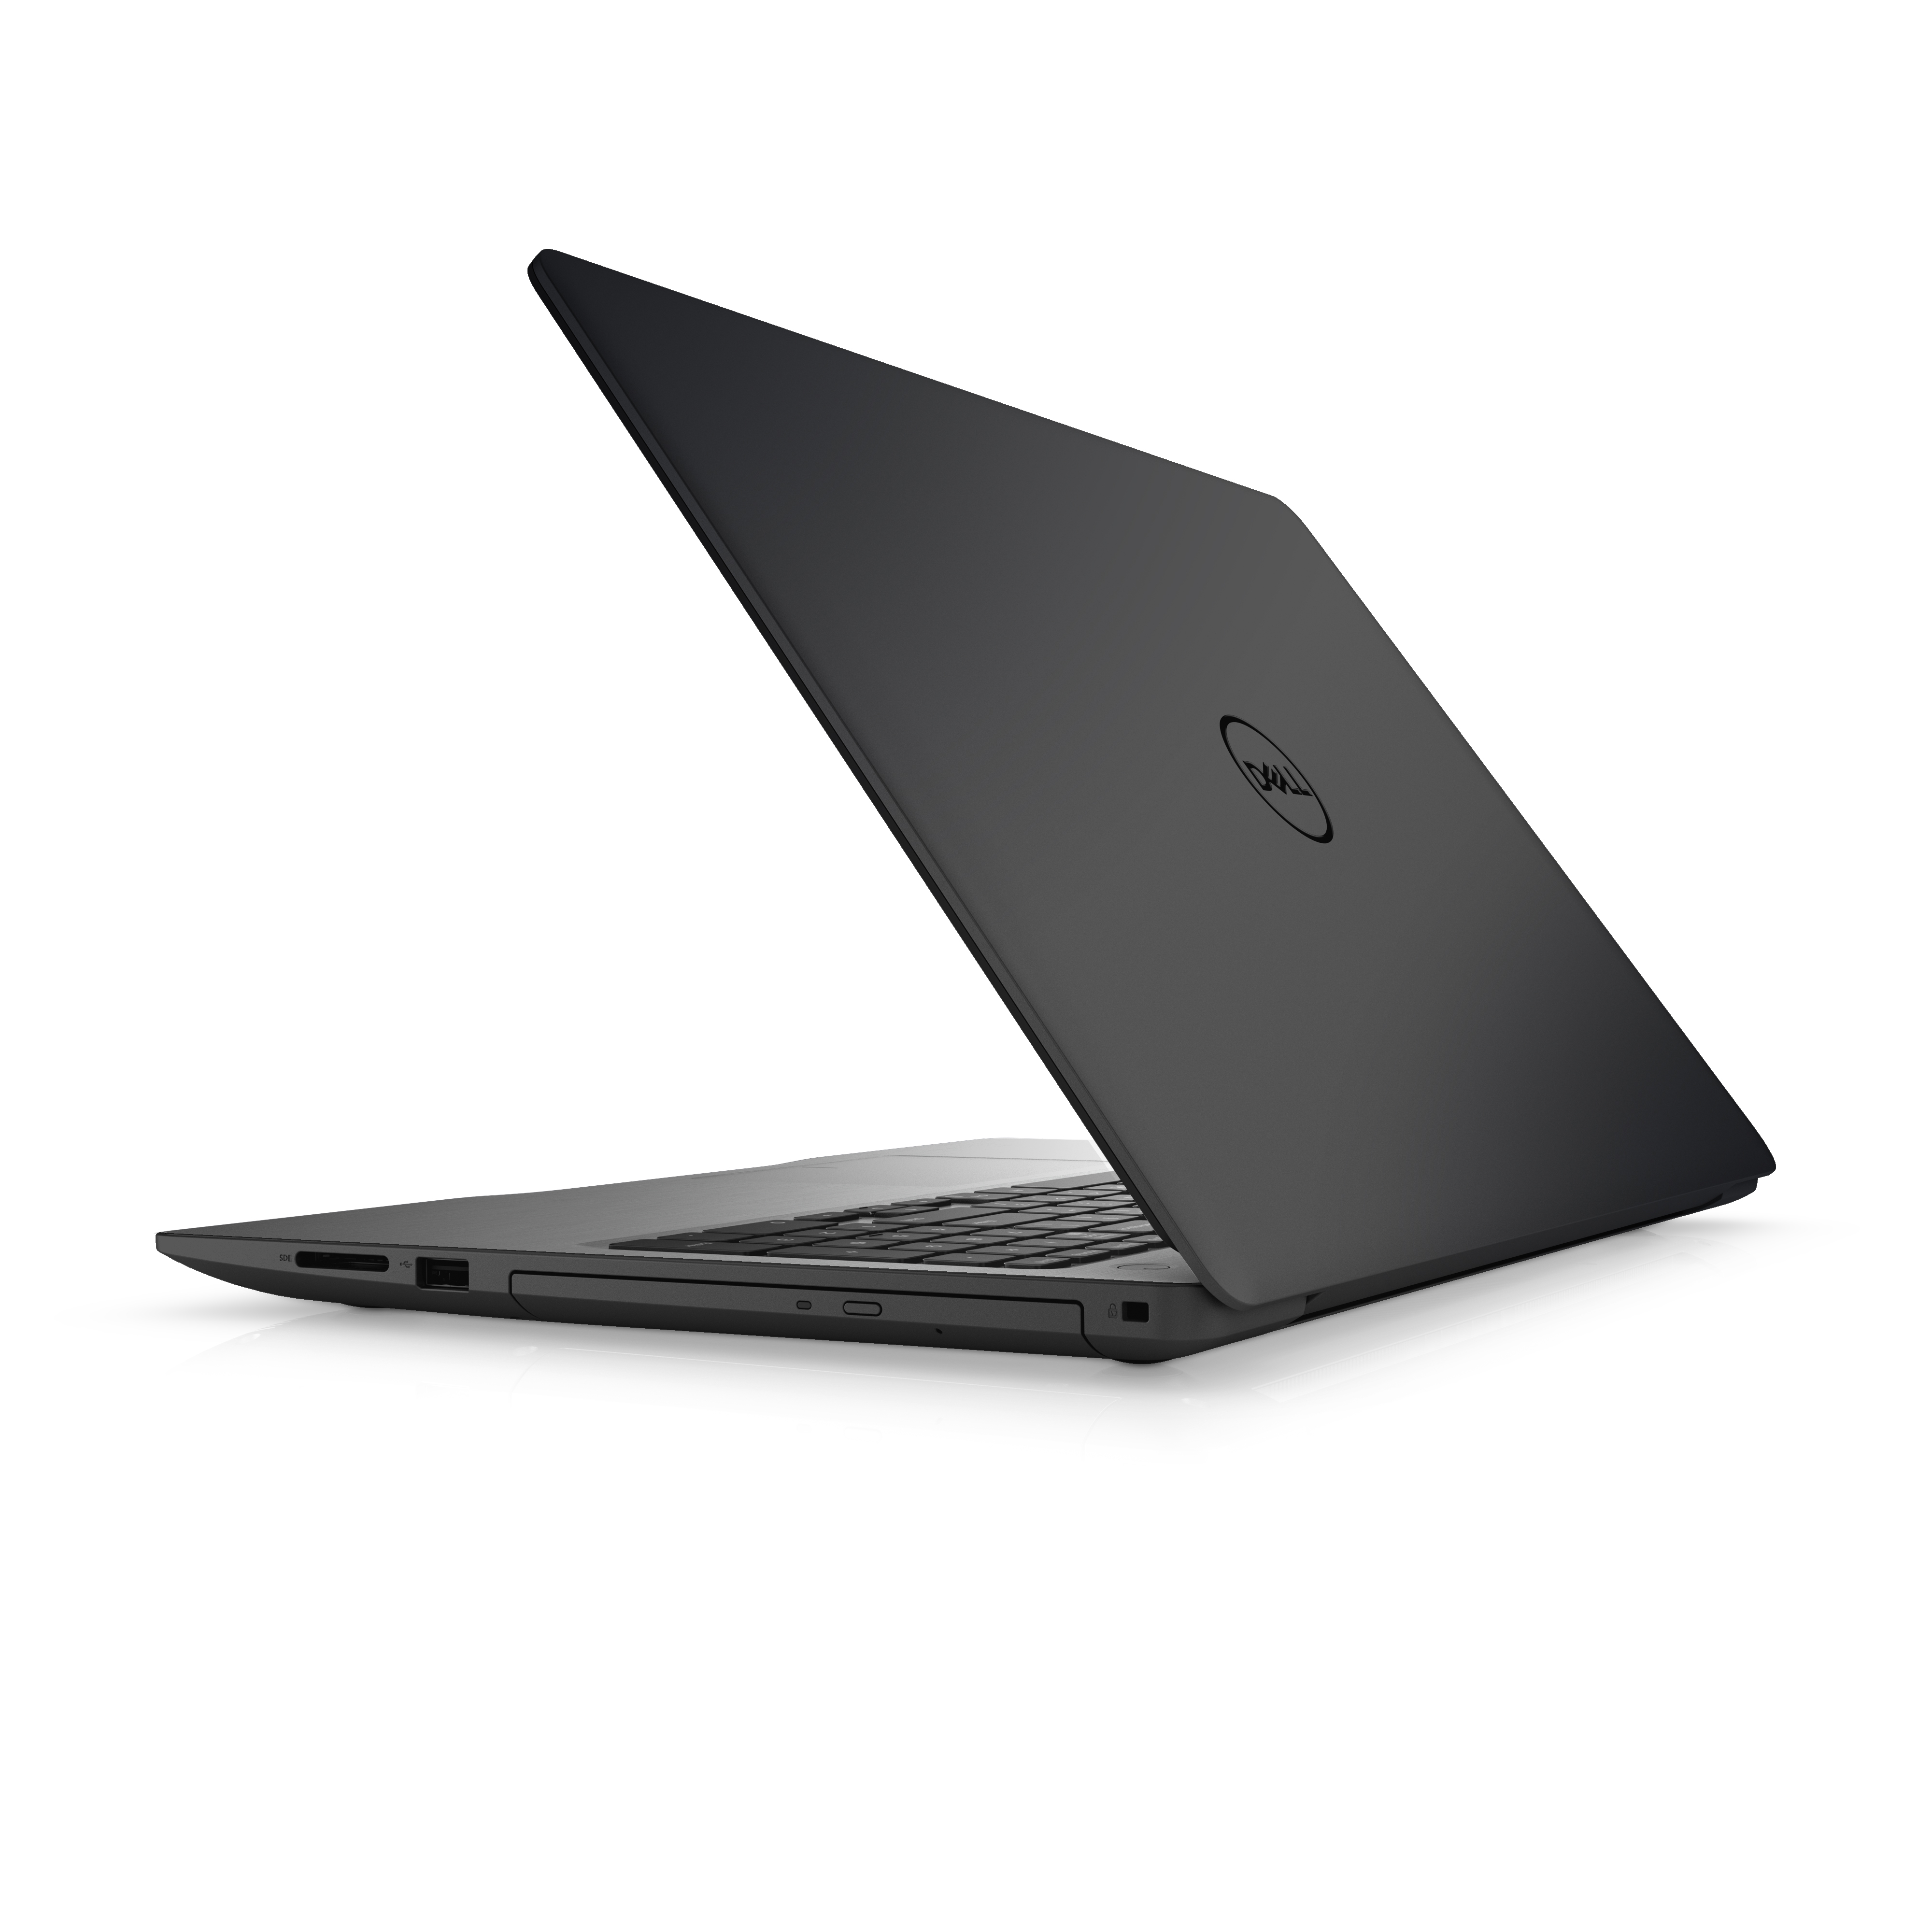 Dell Inspiron 15 5000 (5575) i5575-A403BLK-PUS 15.6″ Laptop, AMD Ryzen 5, 4GB RAM, 1TB HDD